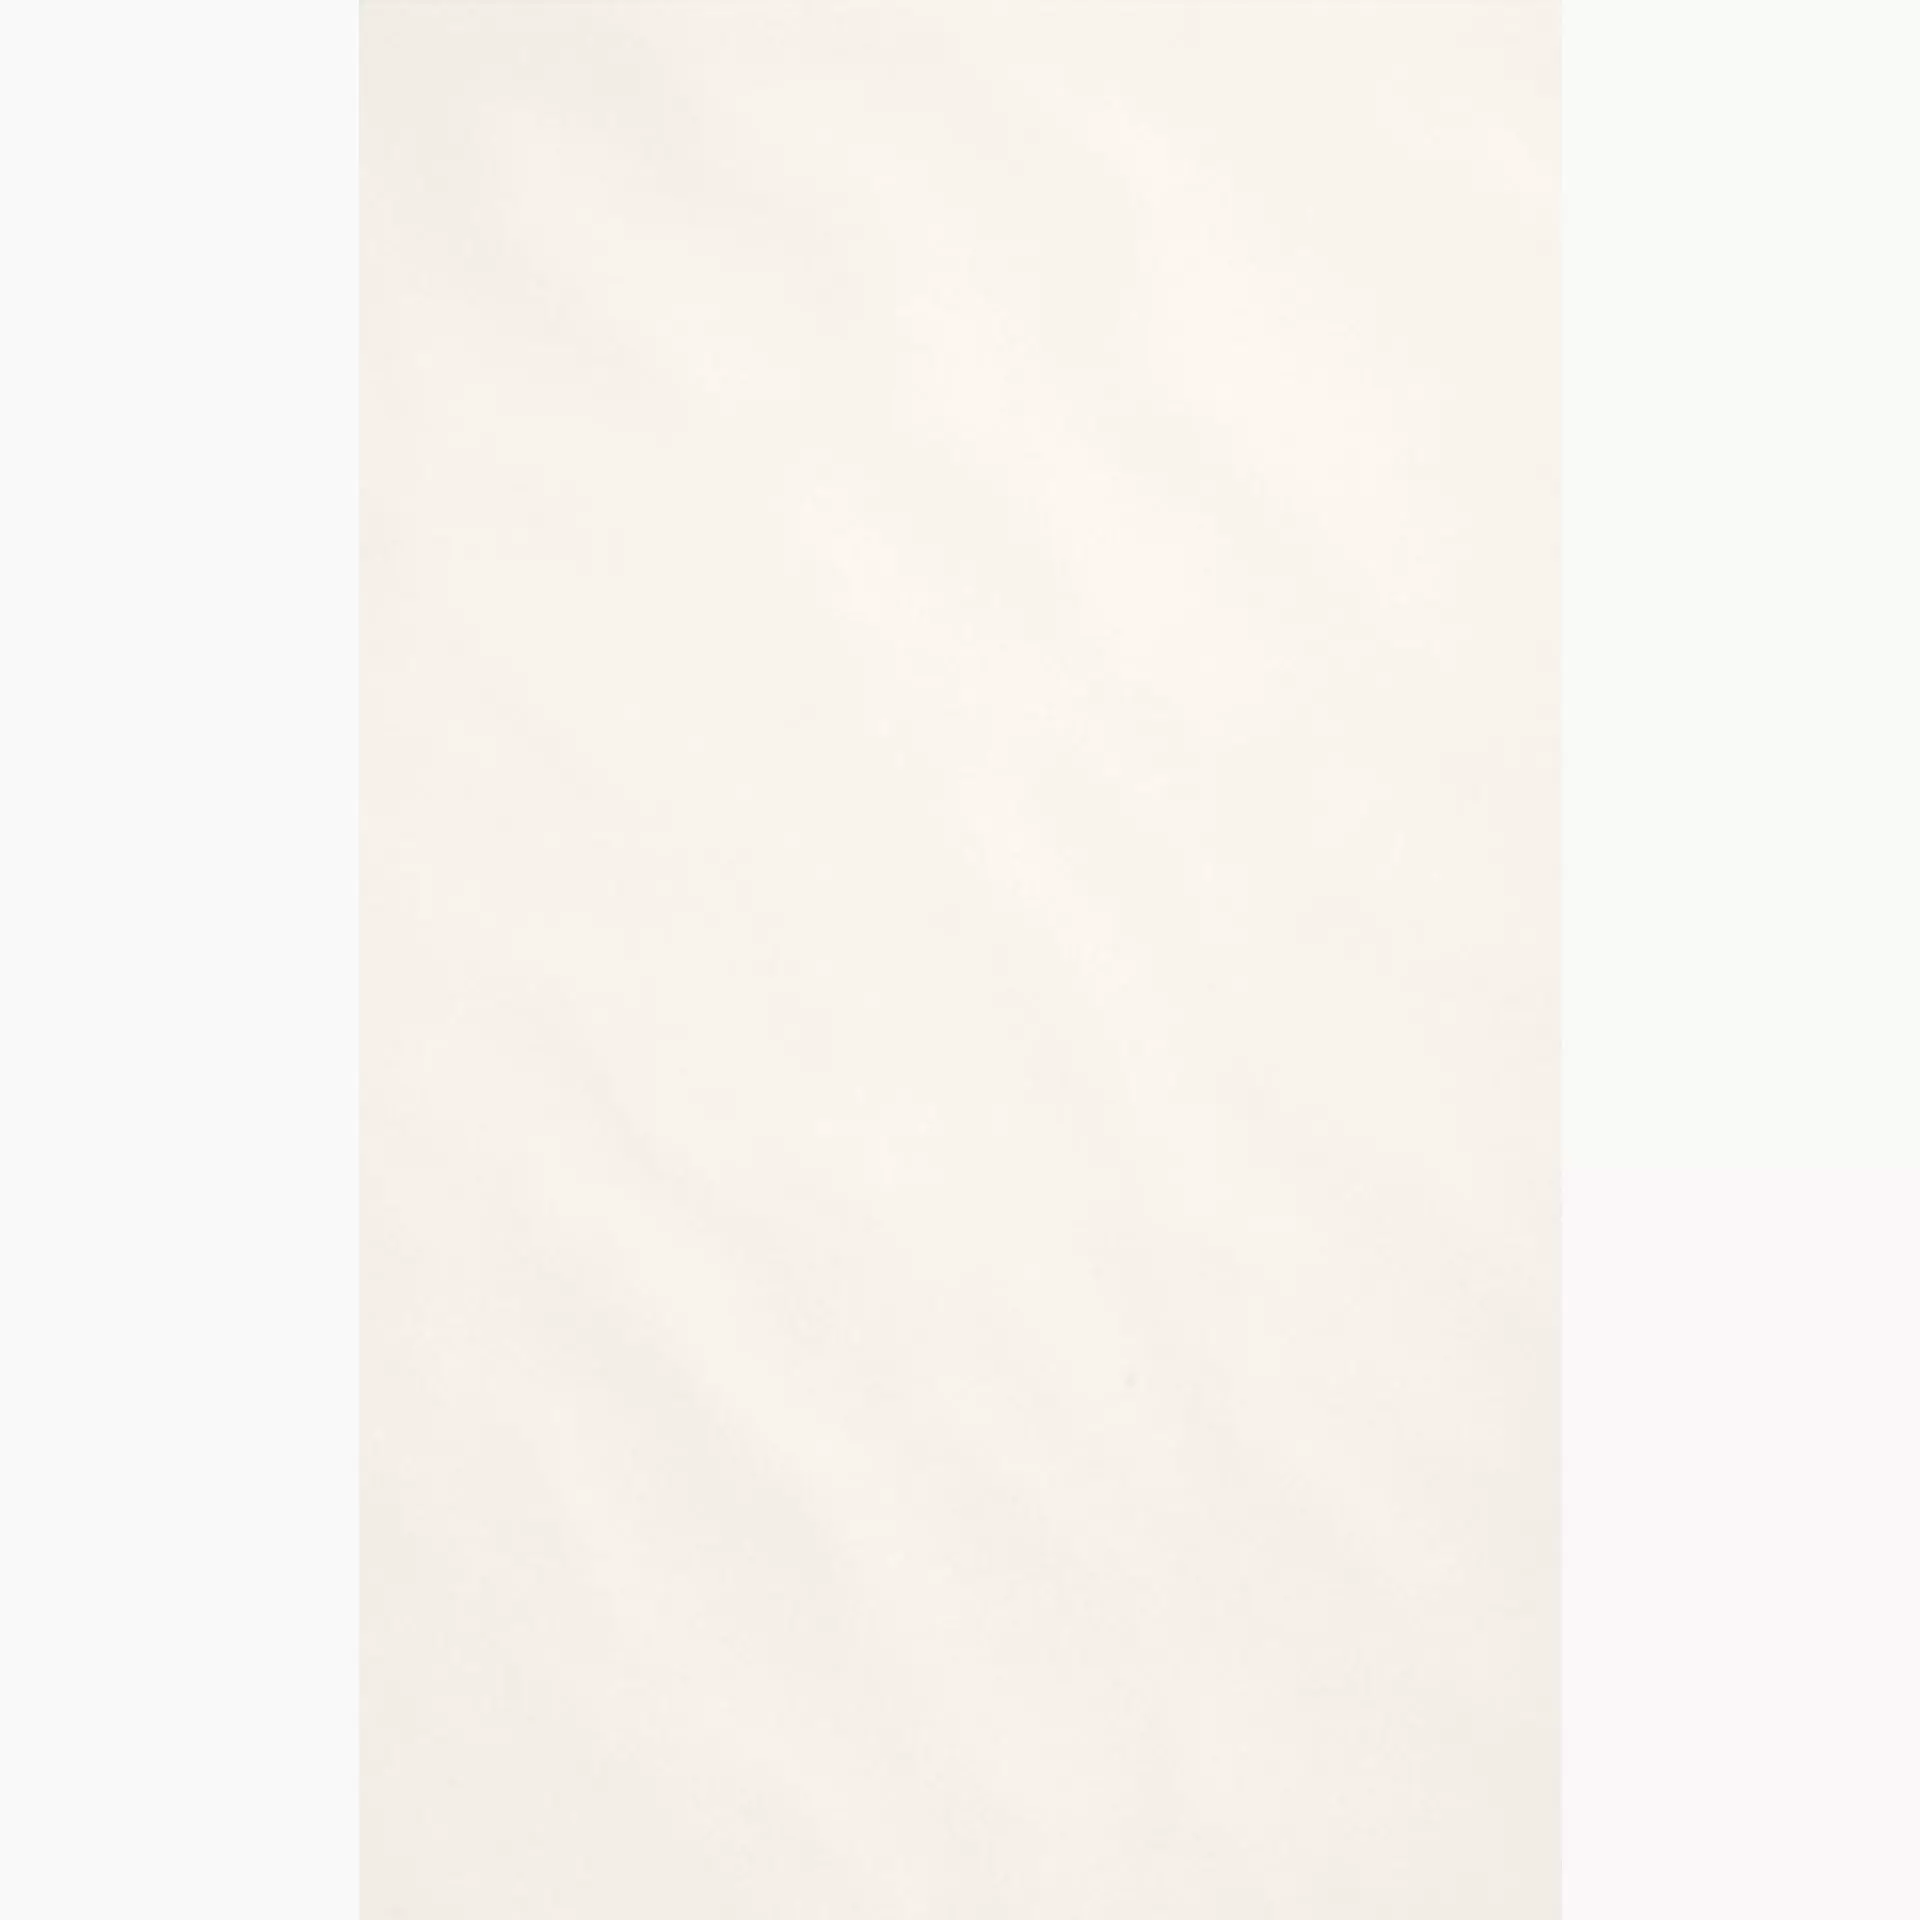 Wandfliese Villeroy & Boch White & Cream White Relief – Glossy White 1391-SW02 glaenzend struktur 25x40cm 8mm